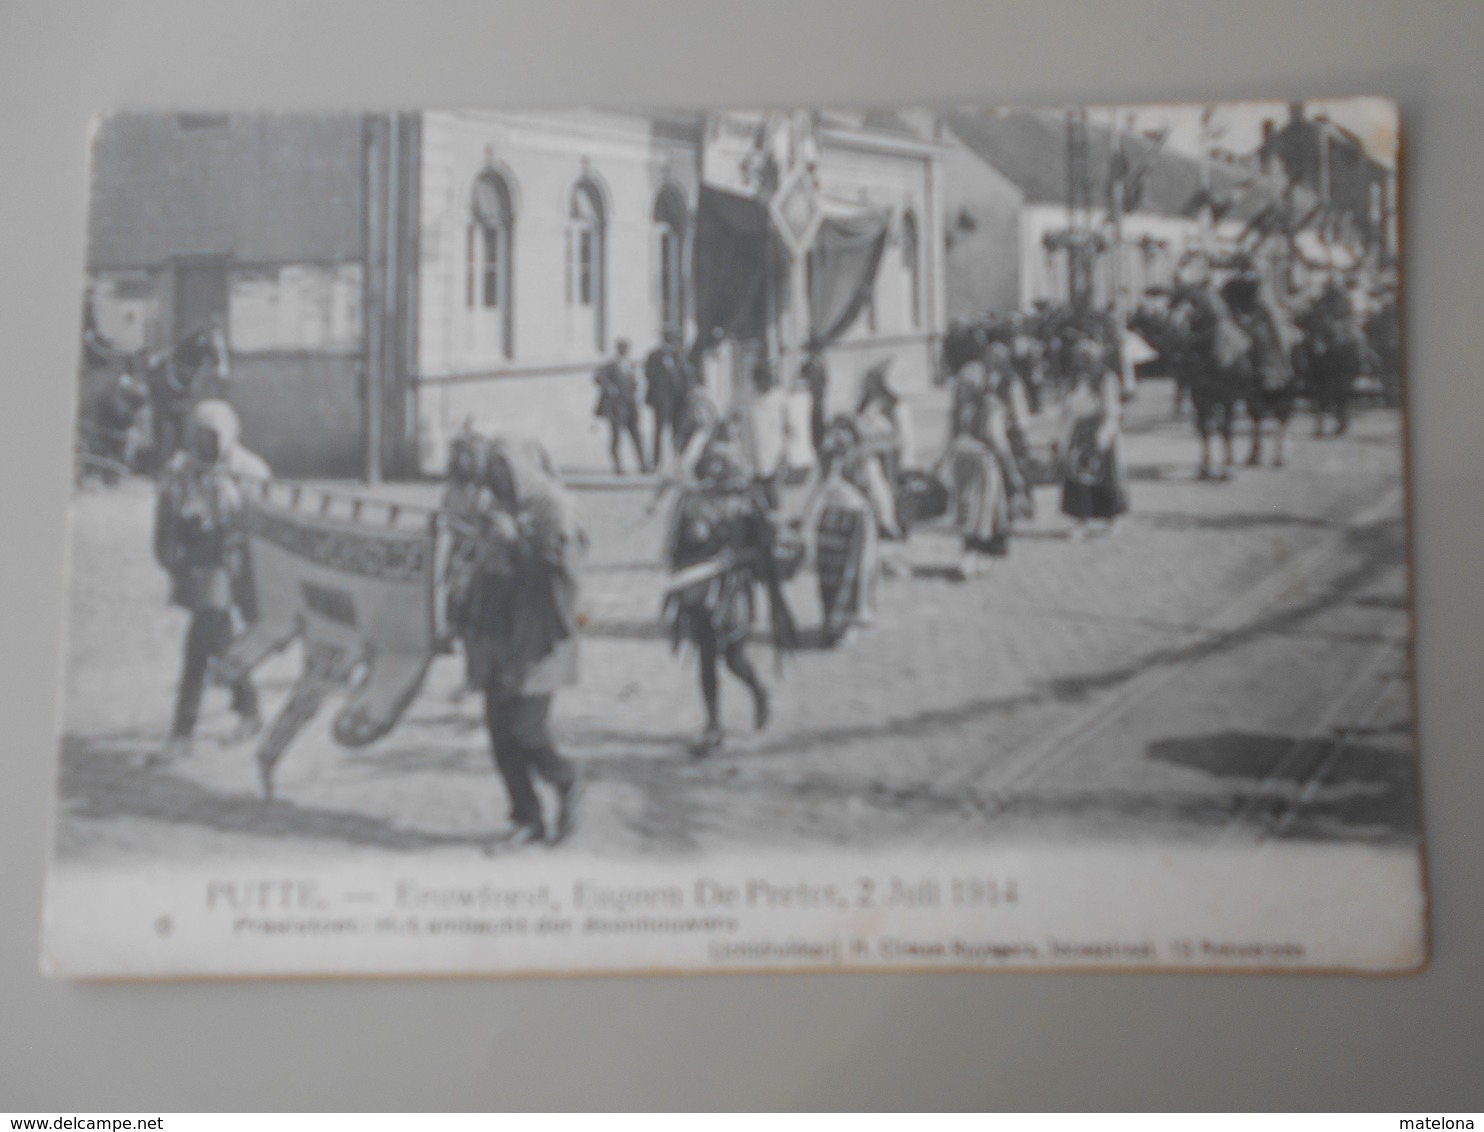 BELGIQUE ANVERS PUTTE FEUWFEEST,EUGEEN DE PRETER, 2 JULI 1914 PRAALSTOET HET AMBACHT DER BEENHOUWERS - Putte